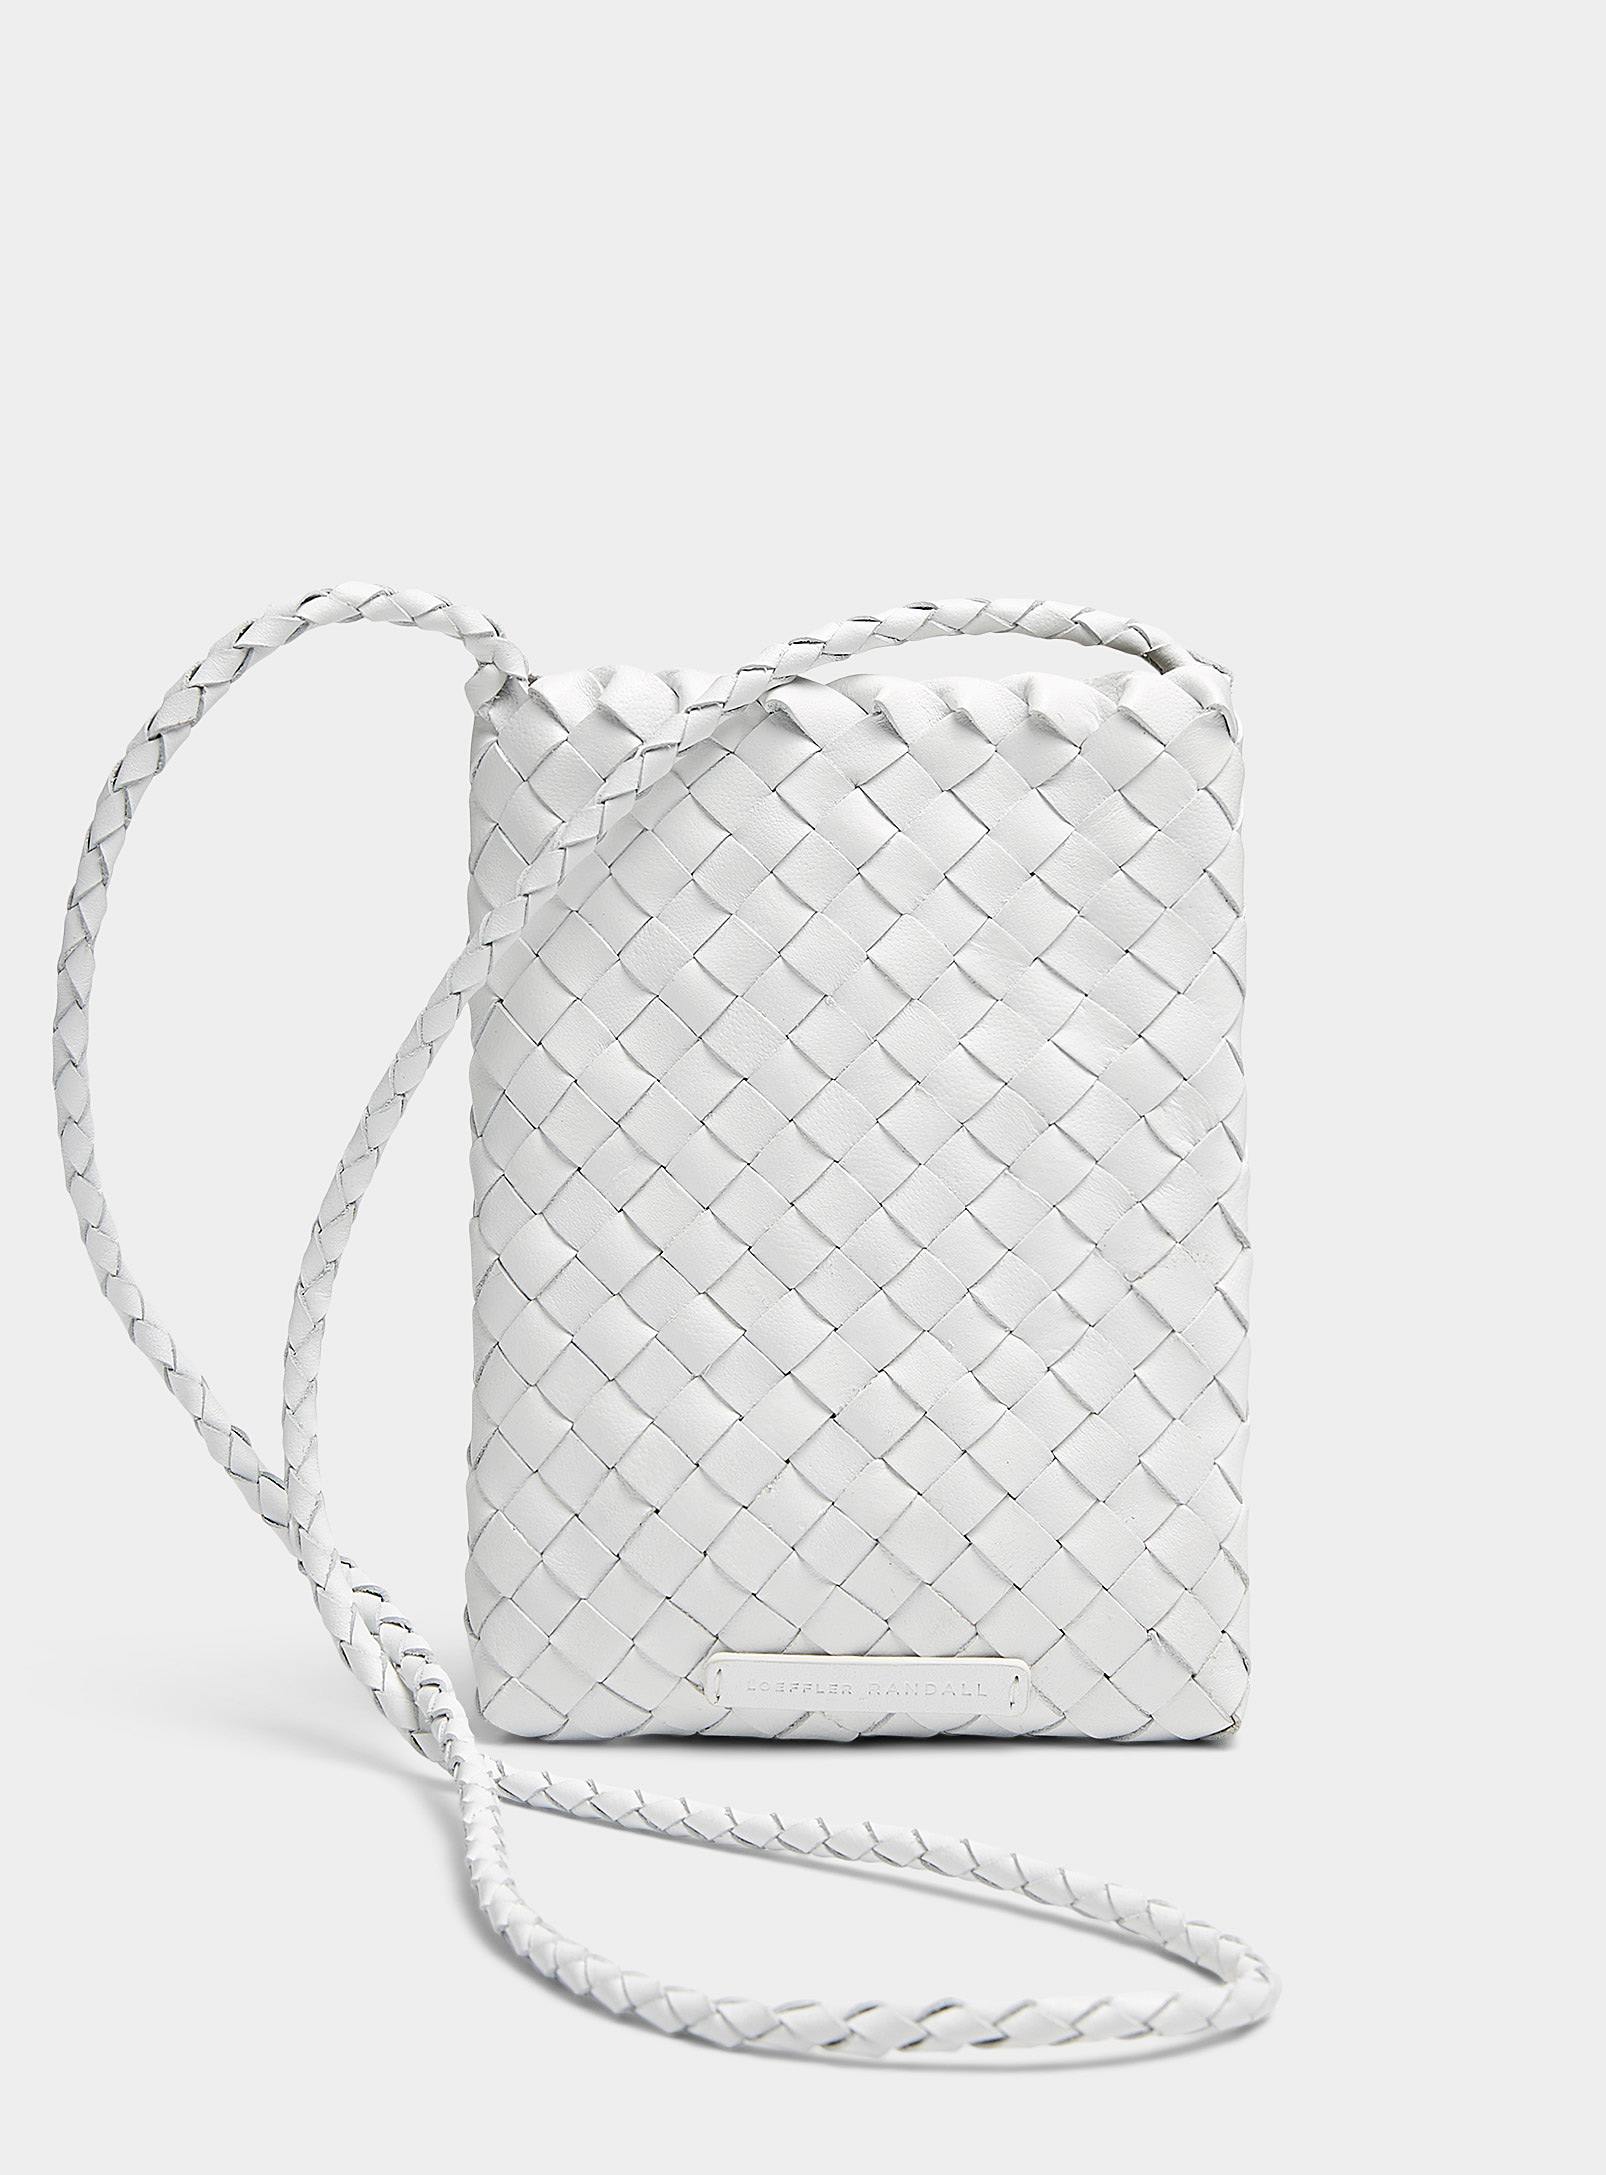 Loeffler Randall Grace Braided Leather Mini Bag In White